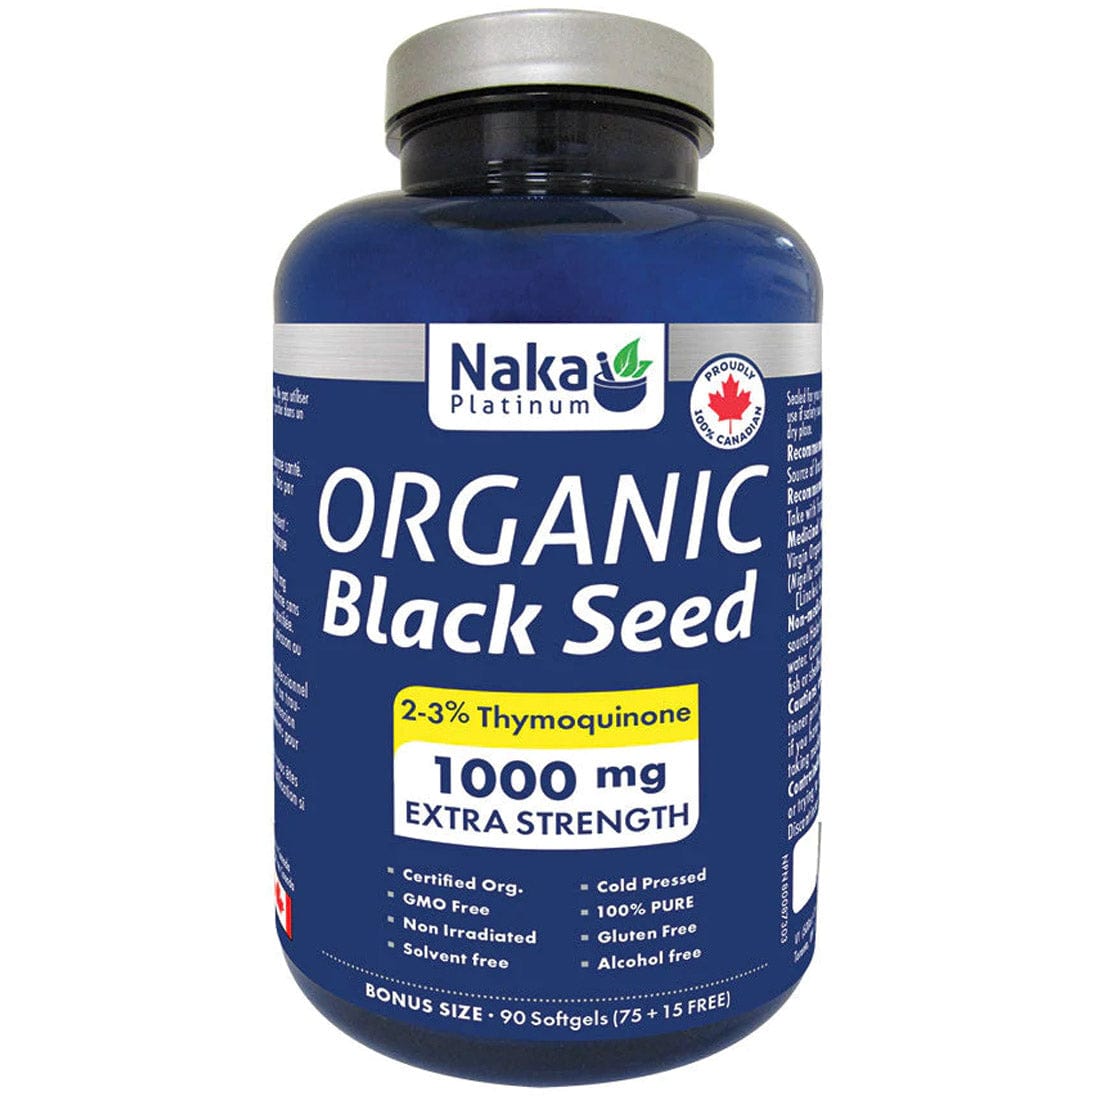 Naka Organic Black Seed 1000mg, 90 Softgels